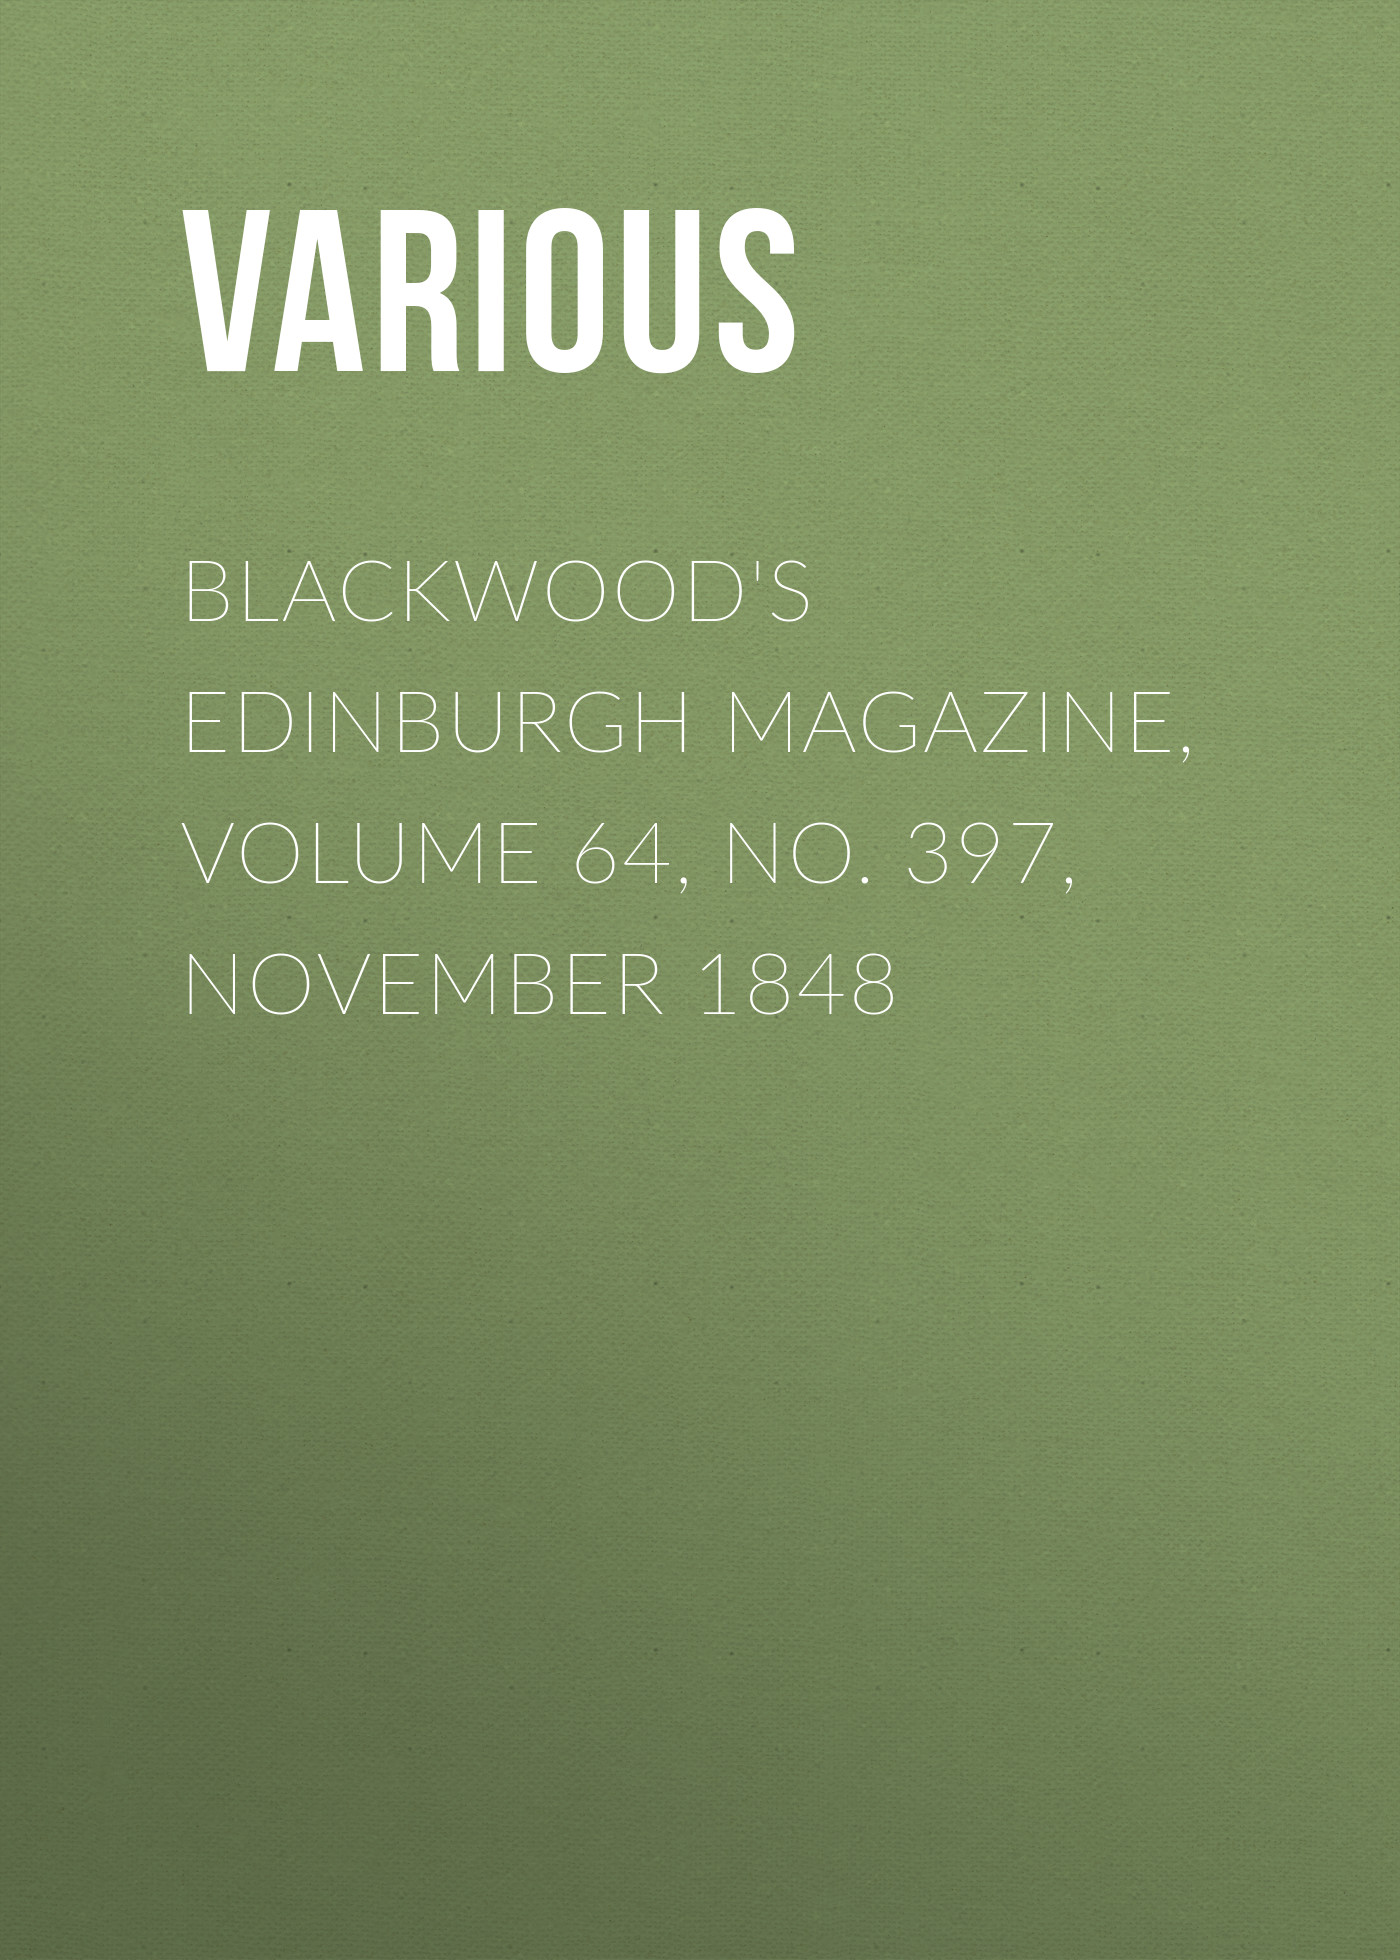 Книга Blackwood's Edinburgh Magazine, Volume 64, No. 397, November 1848 из серии , созданная  Various, может относится к жанру Журналы, Зарубежная образовательная литература, Книги о Путешествиях. Стоимость электронной книги Blackwood's Edinburgh Magazine, Volume 64, No. 397, November 1848 с идентификатором 25569503 составляет 0 руб.